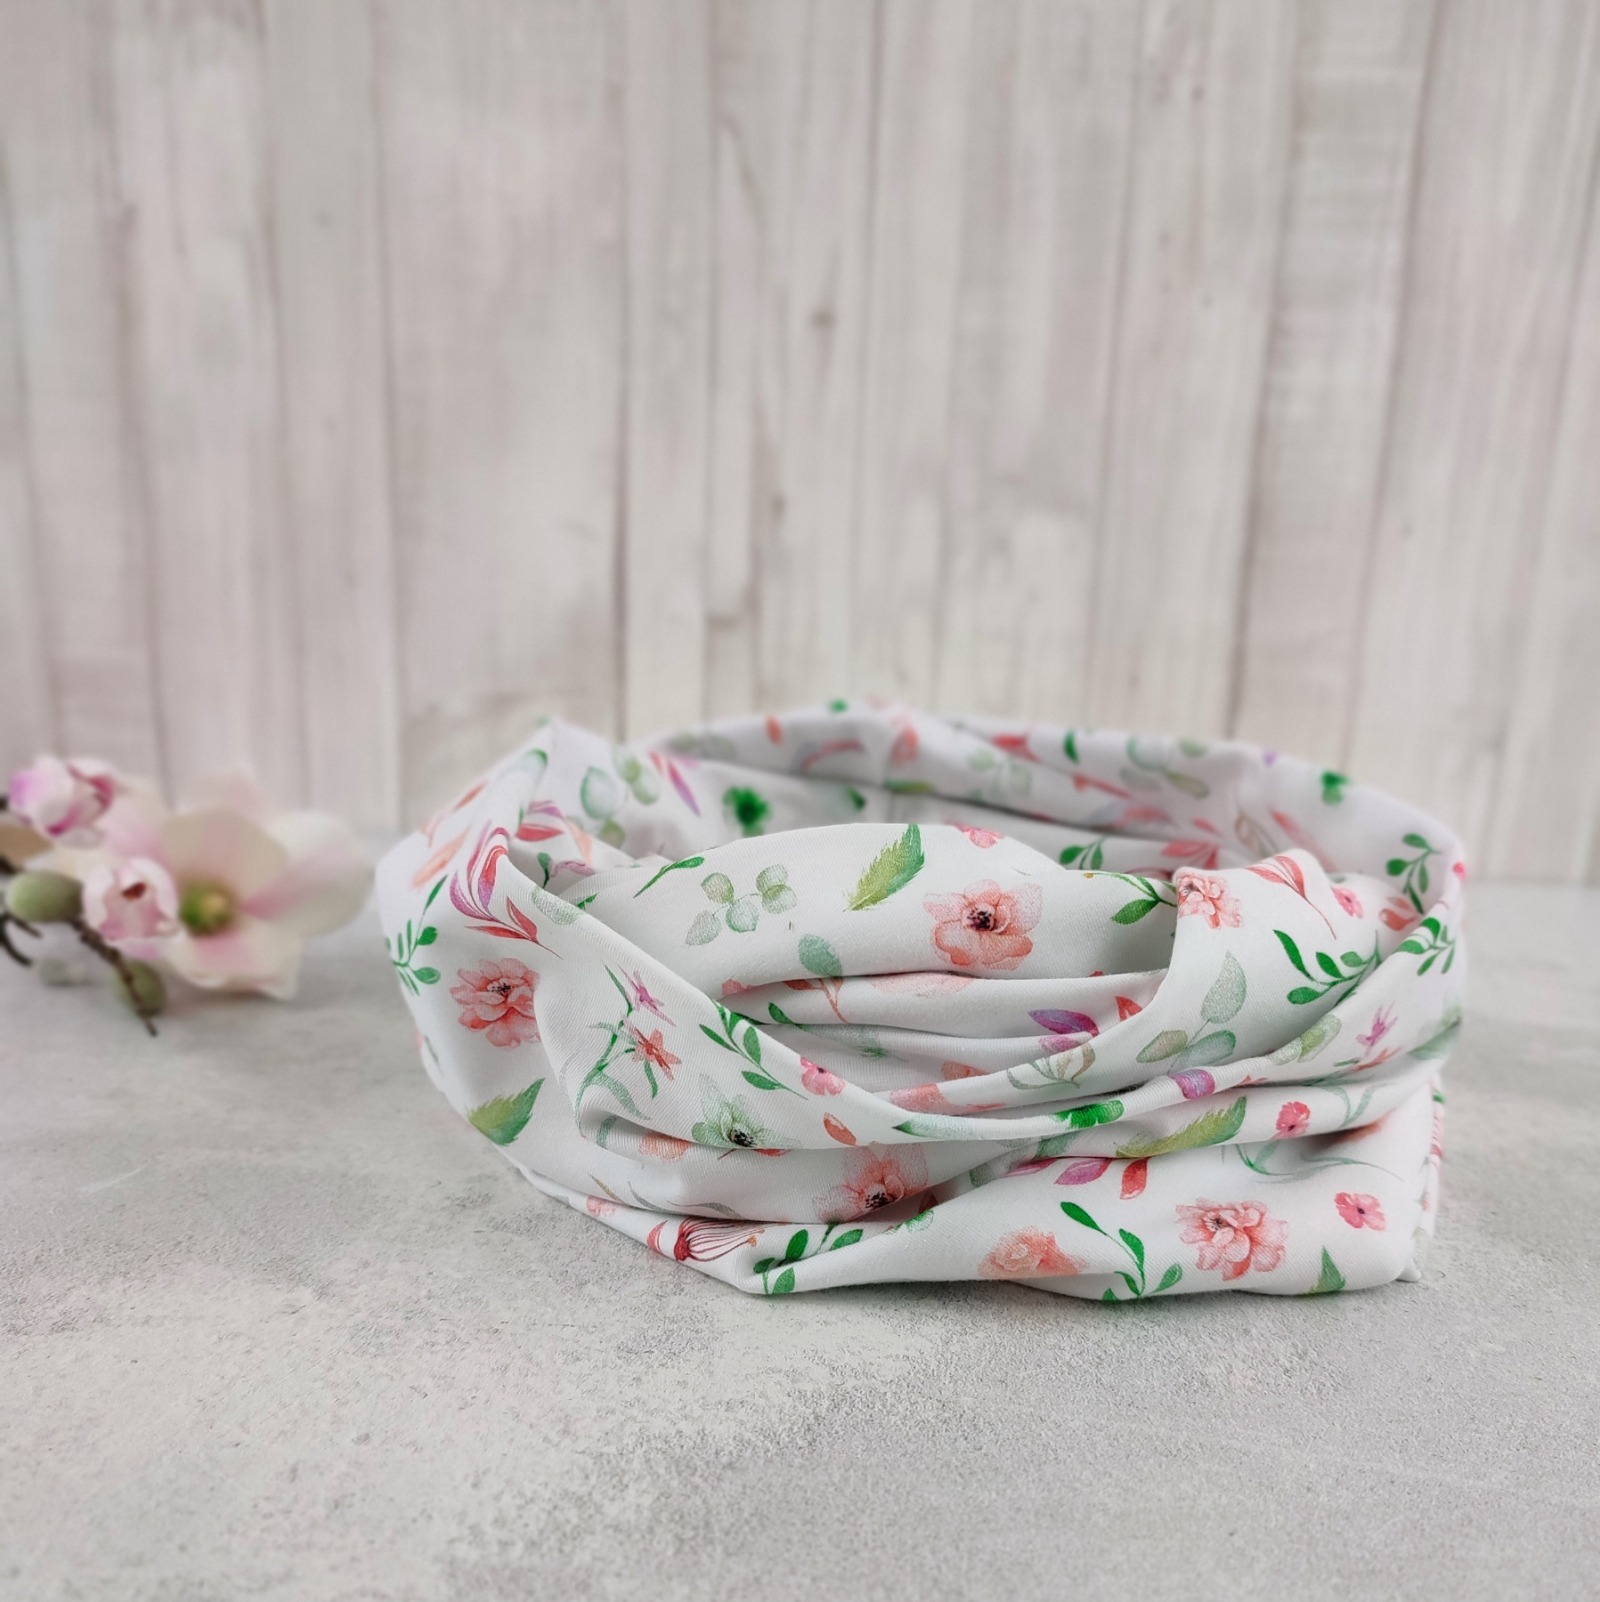 Loop Schlauchschal weiß mit kleinem Blumenmuster in lachsrosa und grün - Schal für Damen aus Jersey 5